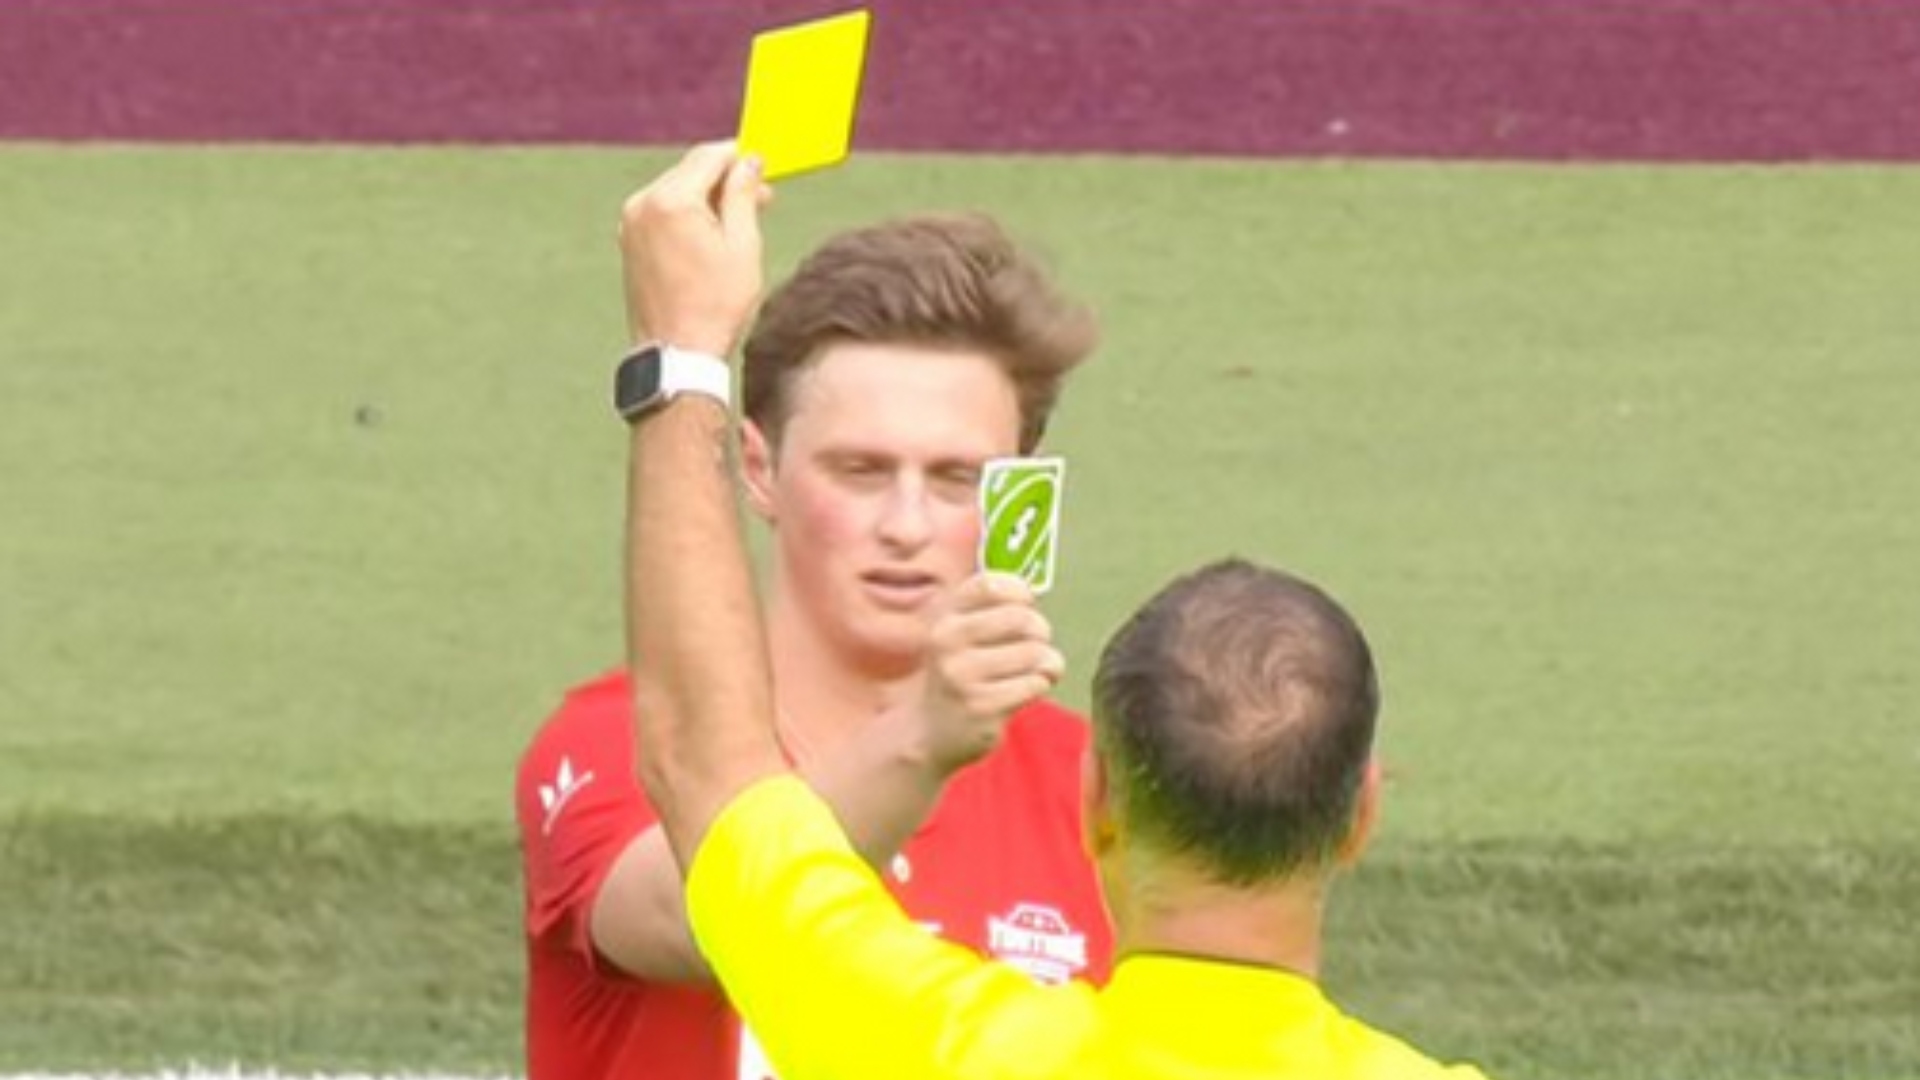 Jogador usa carta de reverso do jogo “UNO” durante partida após amarelo